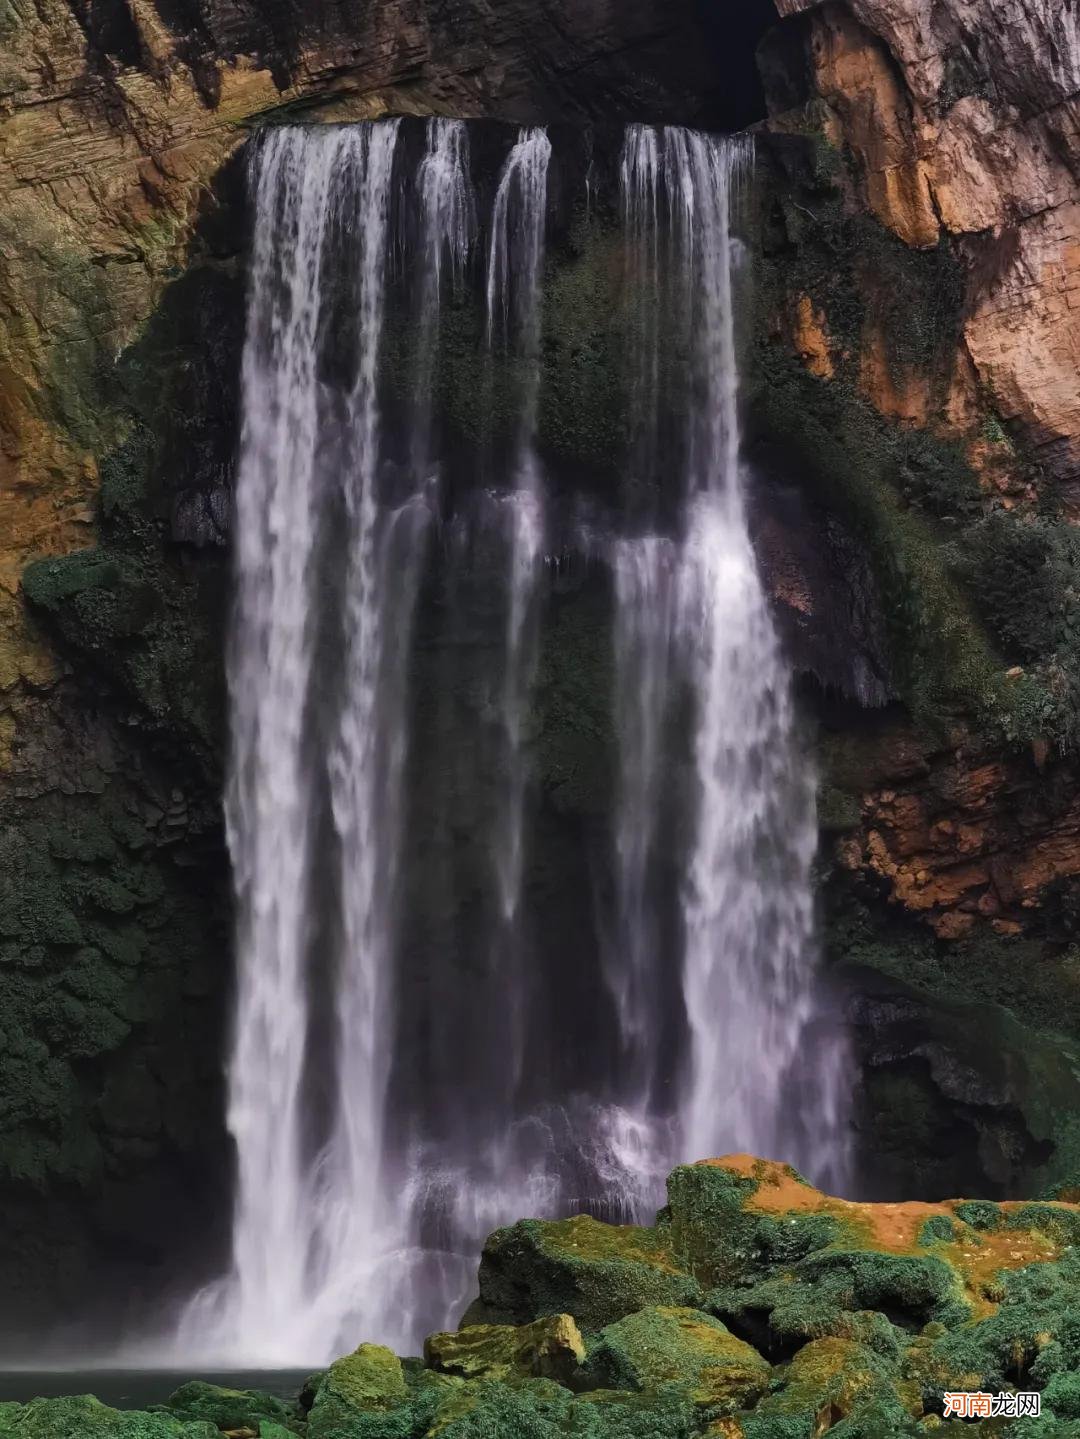 手机拍出瀑布和水流好看照片的教程 拍摄瀑布技巧